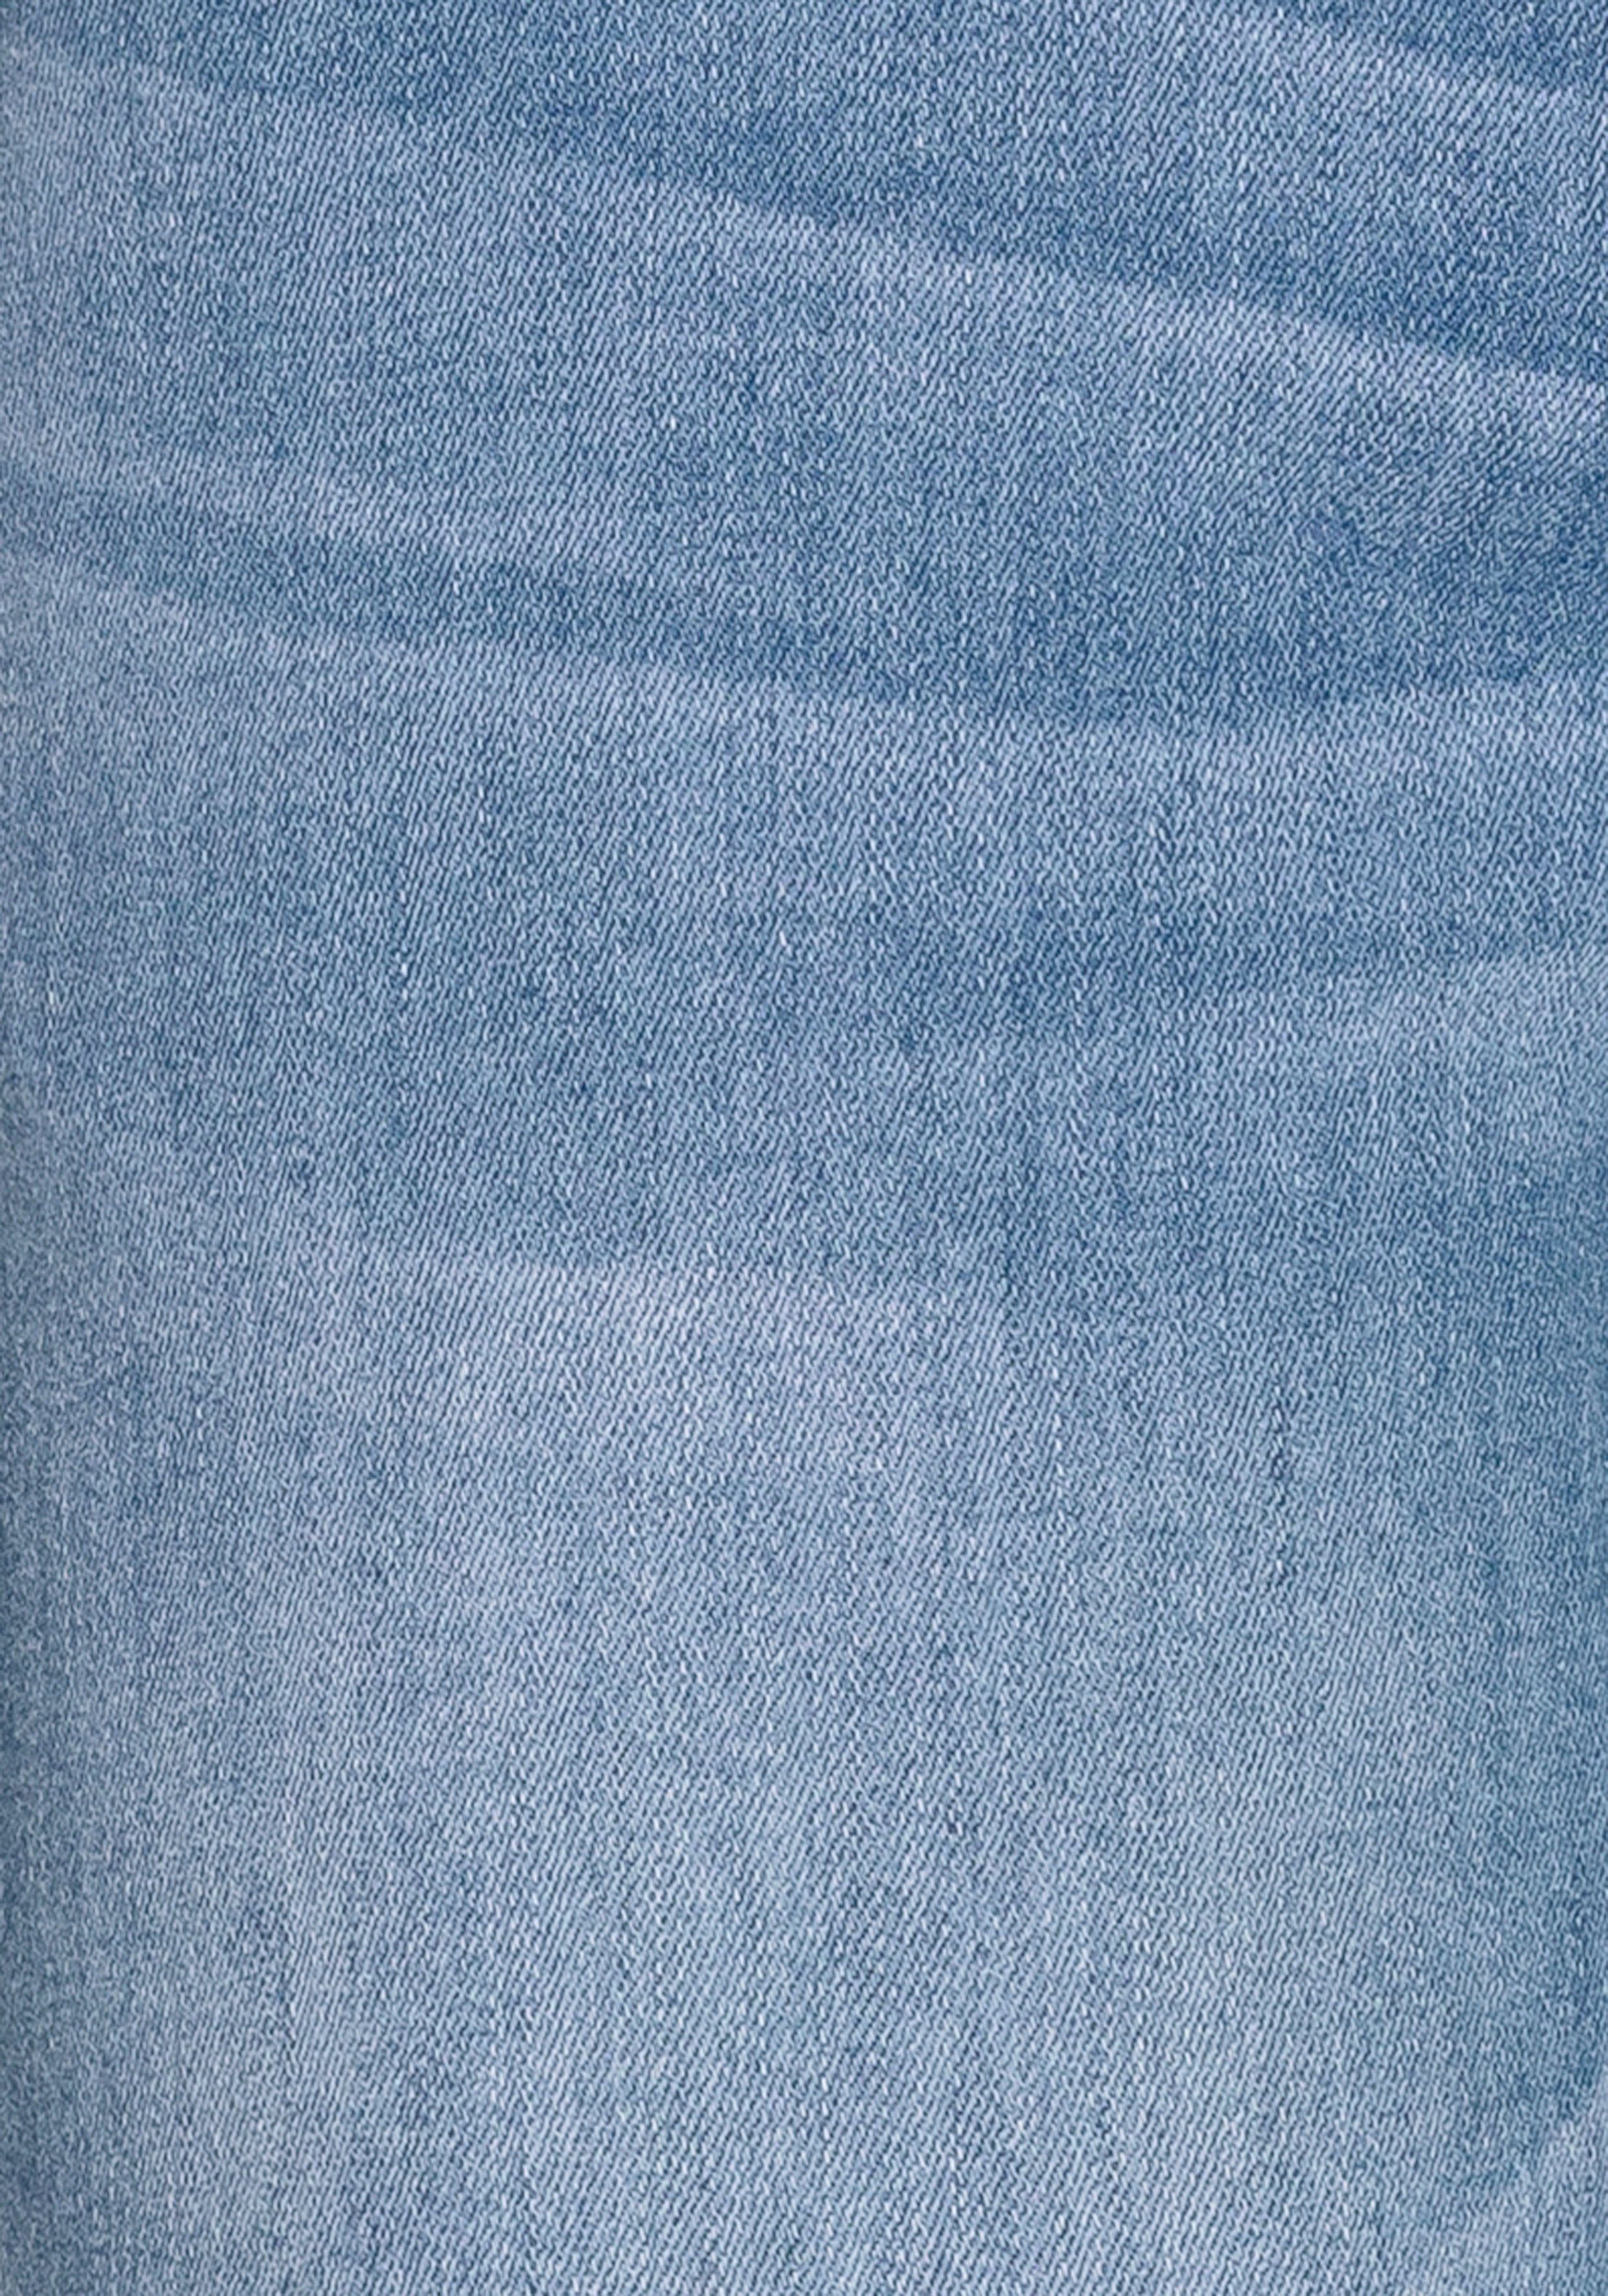 H.I.S 5-Pocket-Jeans ökologische, Produktion ariaMS wassersparende Ozon Wash durch